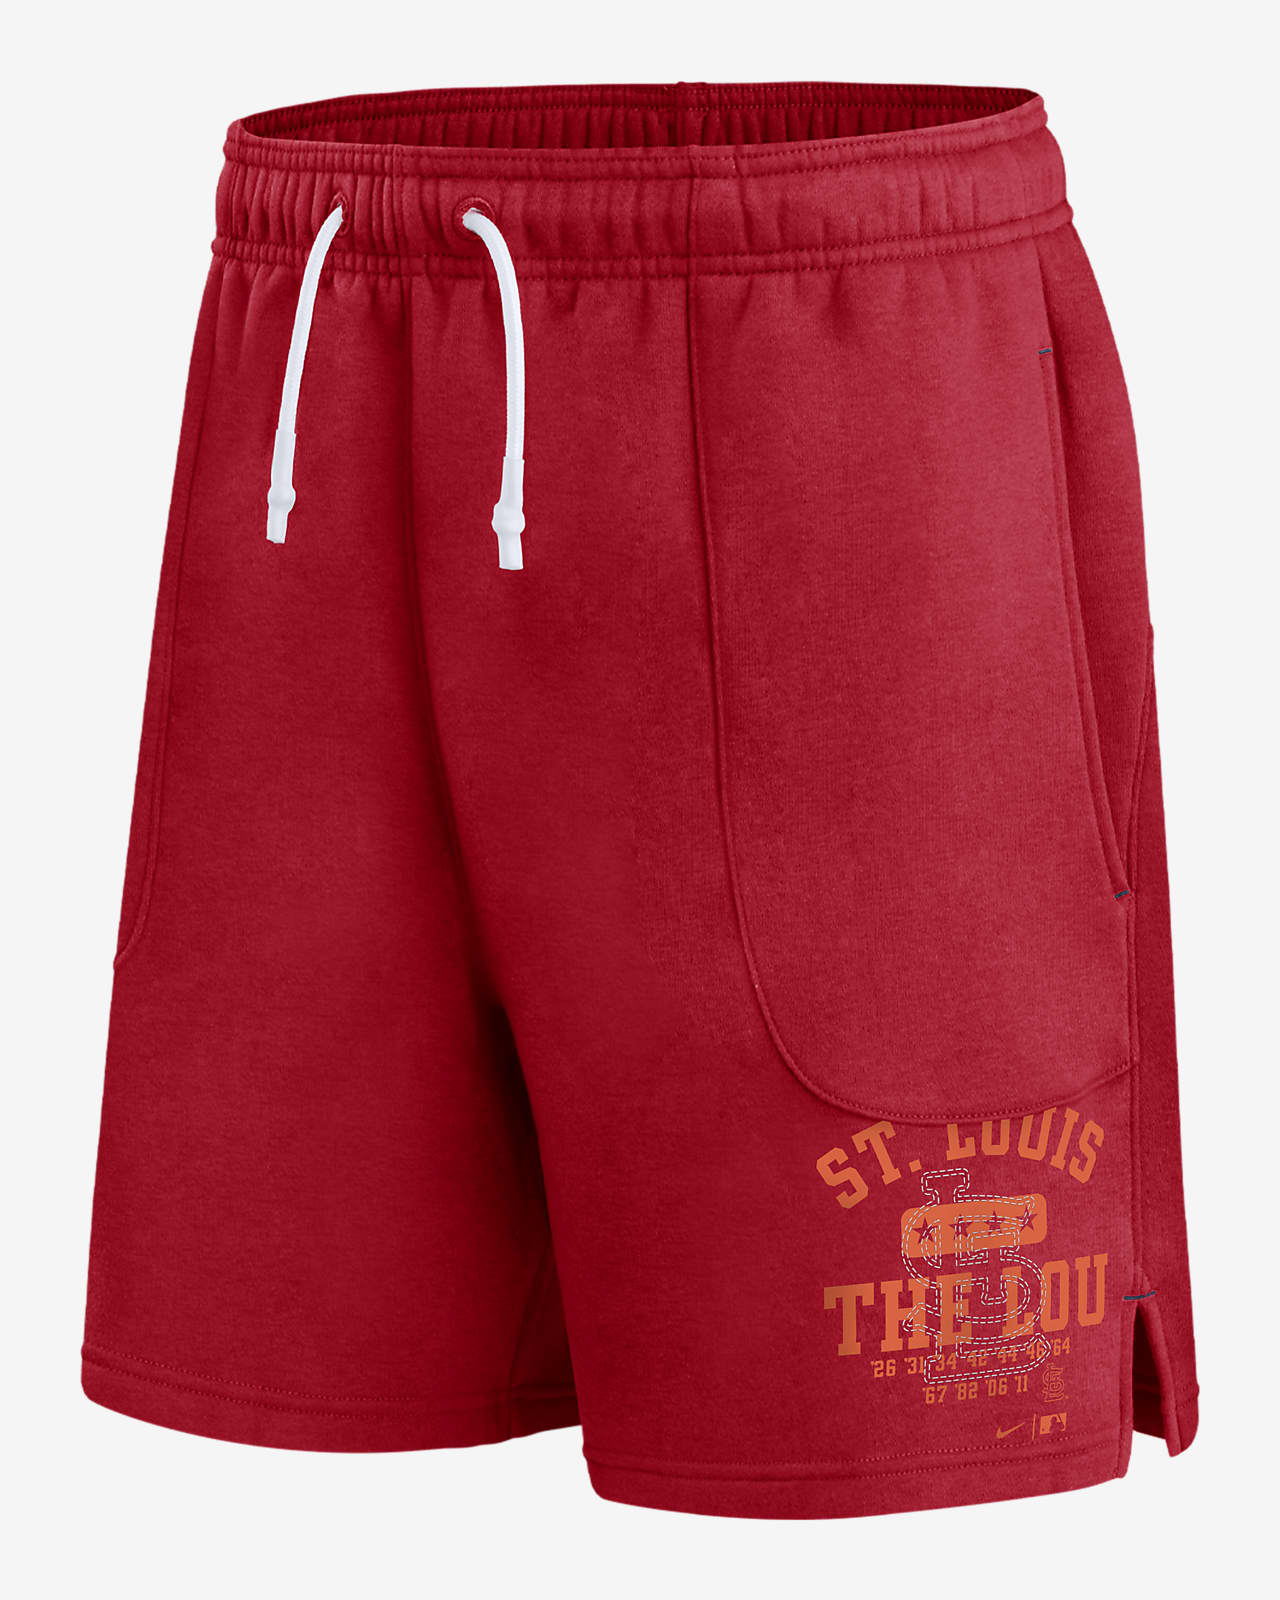 Nike Statement Ballgame (MLB St. Louis Cardinals) Men's Shorts